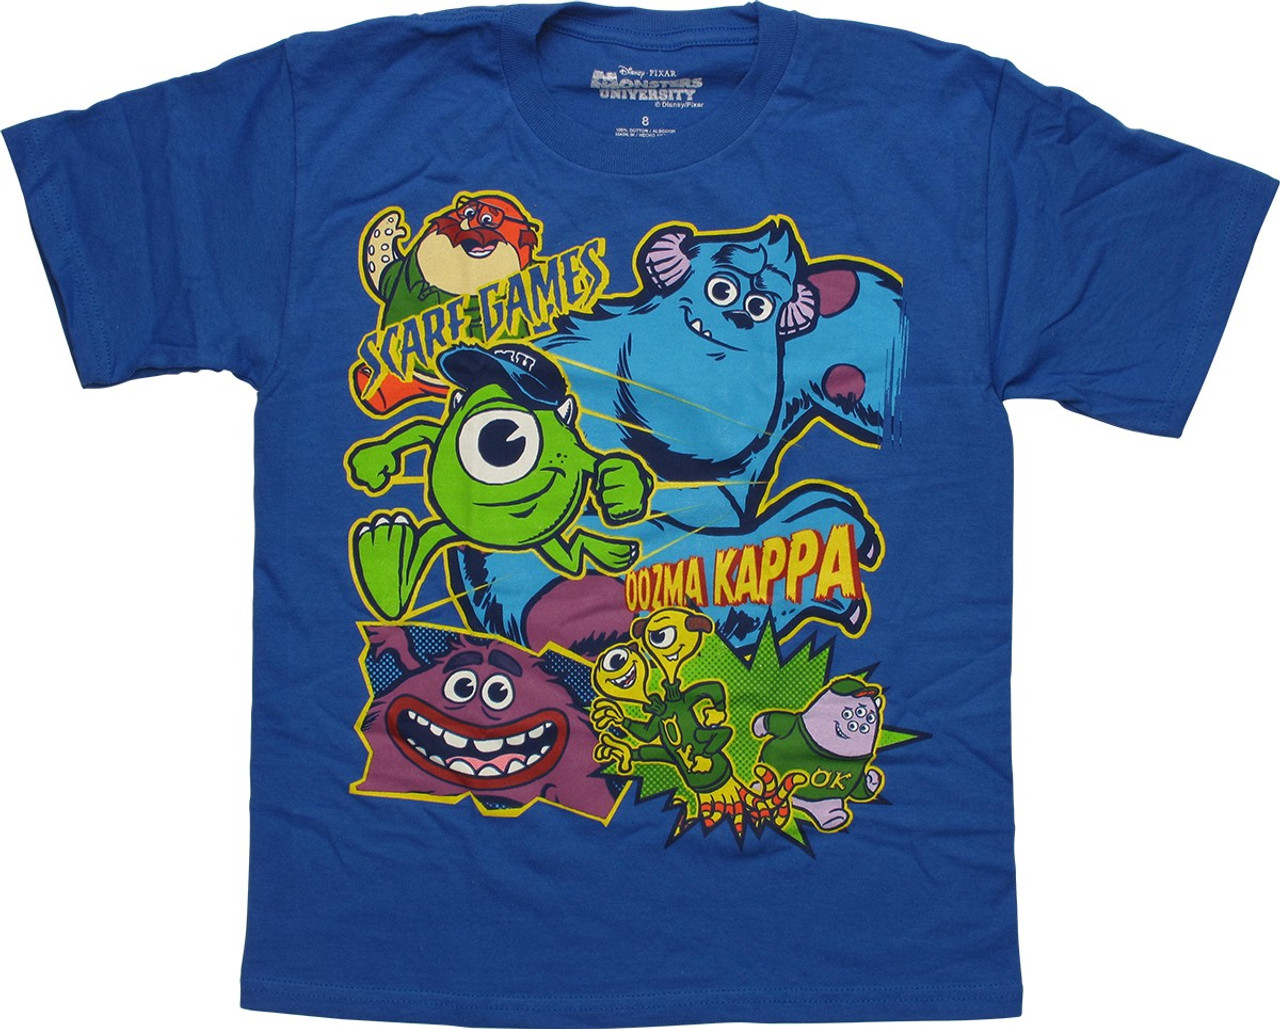 Monsters Inc Sully Shirt - Monsters Inc Shirt - Monsters University -  Monster - Sully - Birthday - Disney Vacation Shirt - Disney - MU